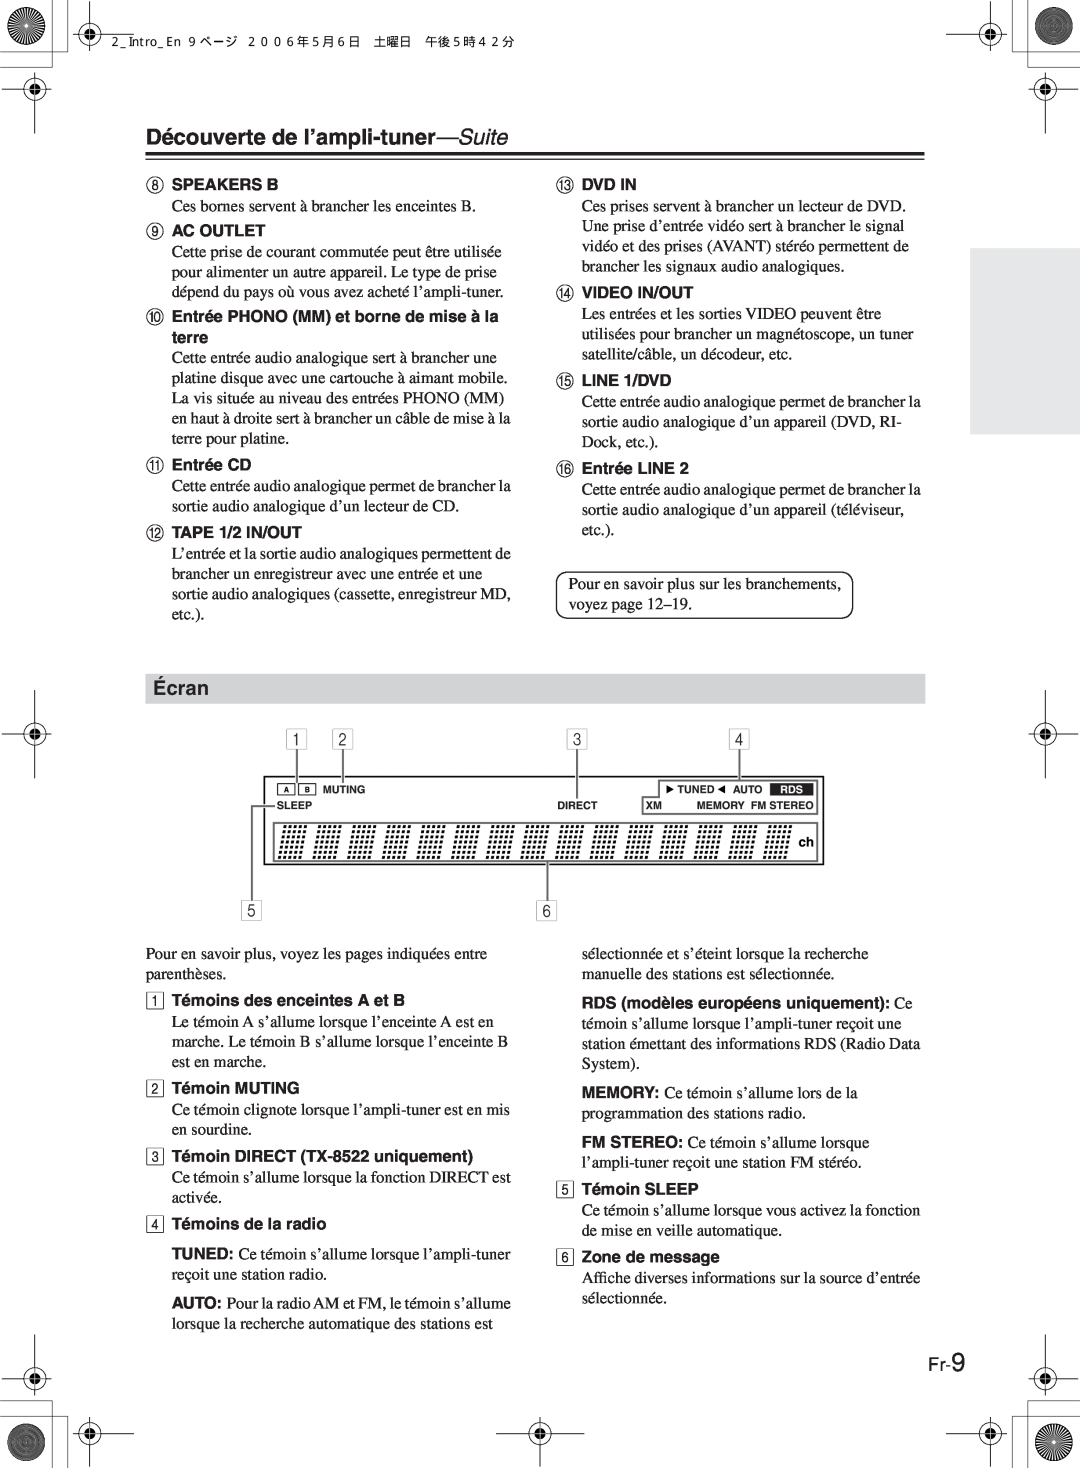 Onkyo TX-8522, TX-8222 manual Écran, Fr-9, Découverte de l’ampli-tuner—Suite 